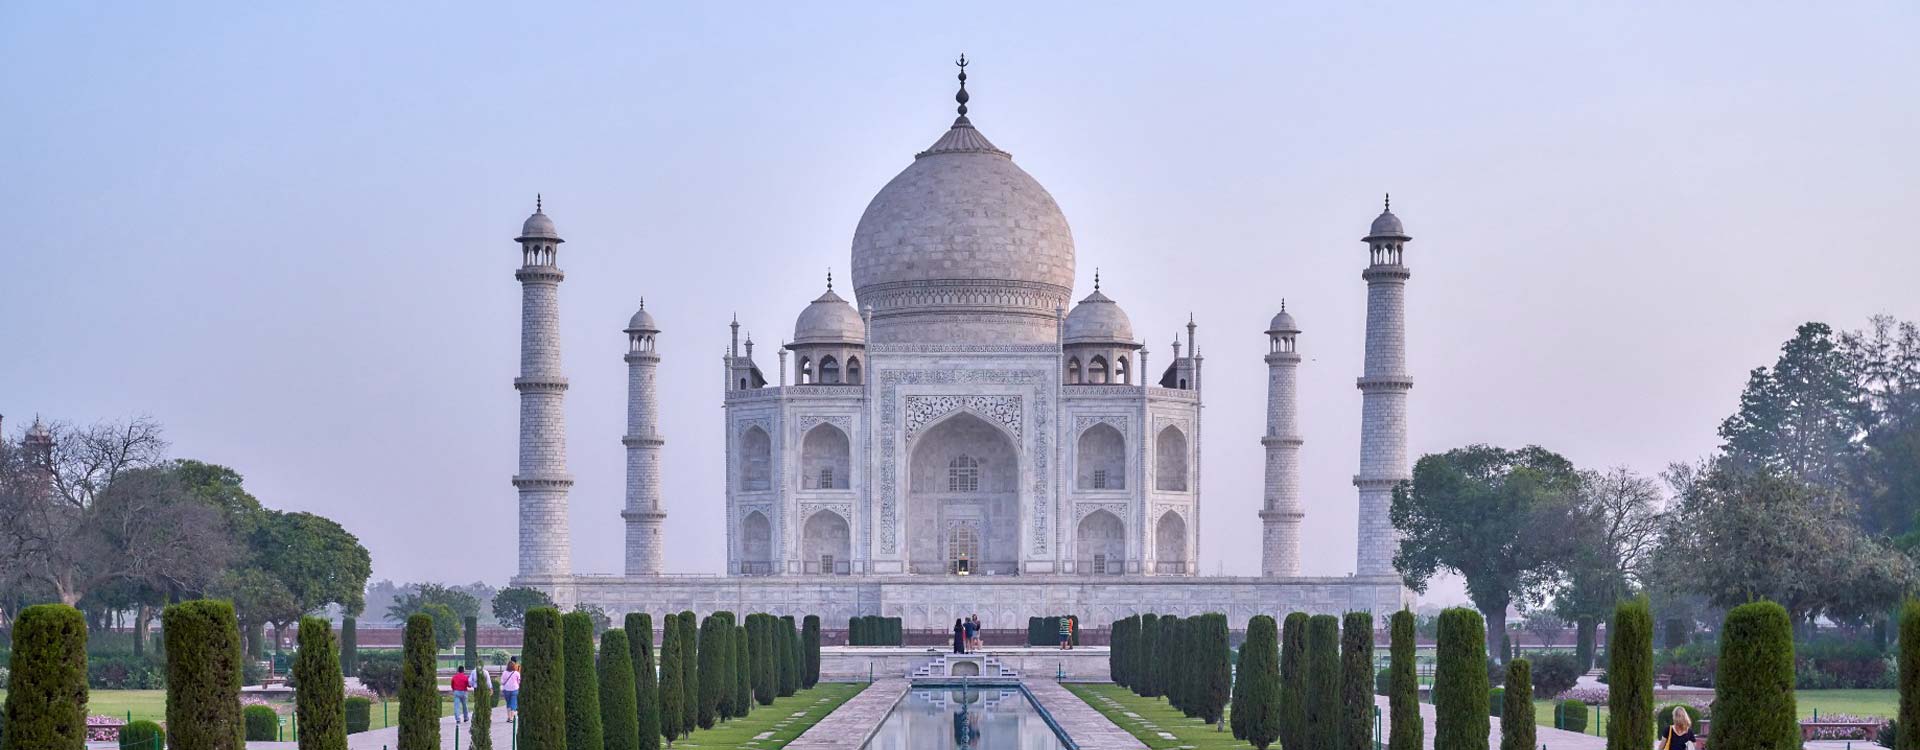  Taj Mahal